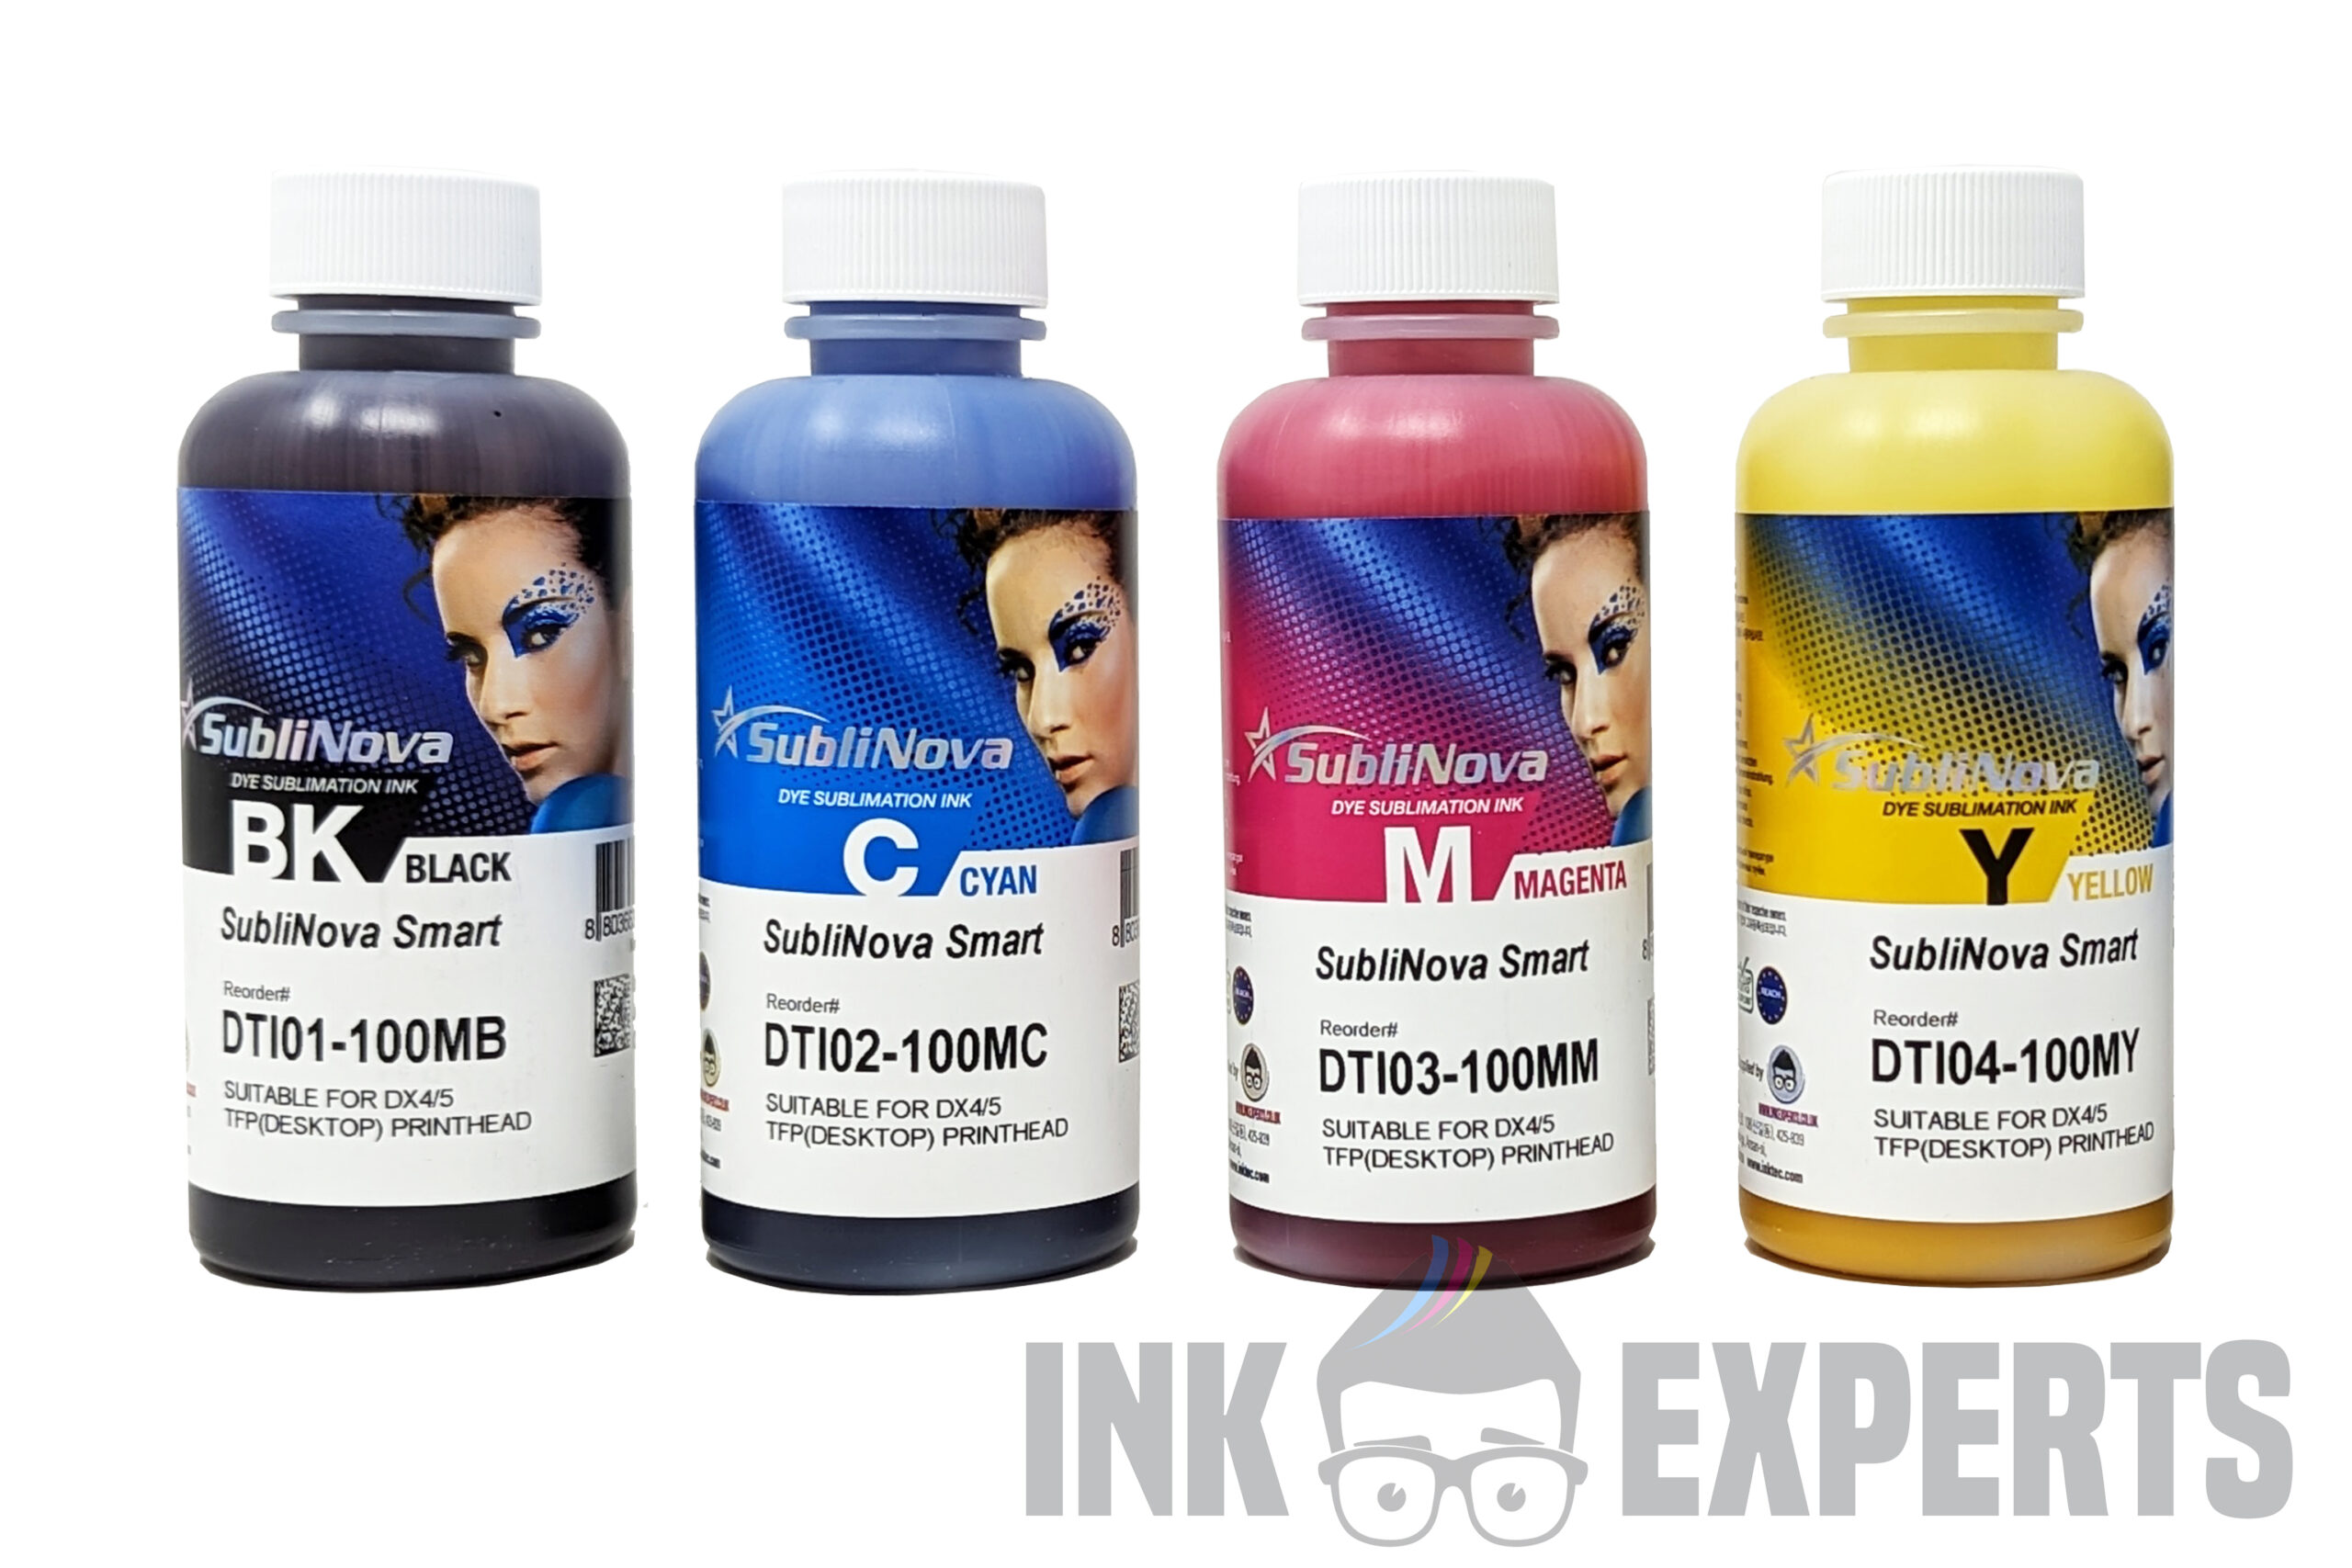 Platinum Pigment Ink - Ink Bottle (4 colors) - Inkt / Ink